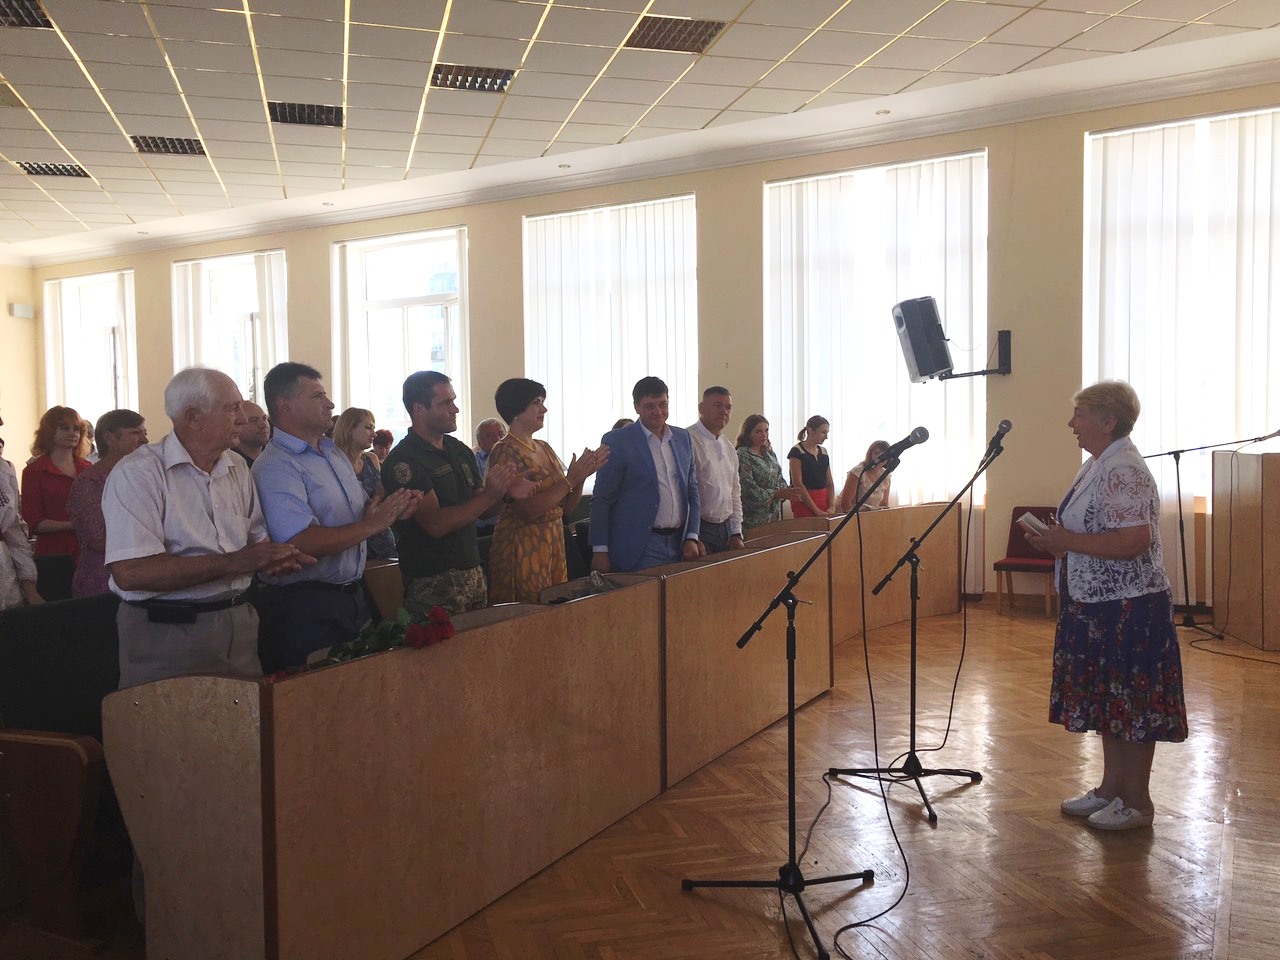 26 червня відбулись районні урочисті заходи з нагоди відзначення Дня Державної служби 23-ї річниці Конституції України та Дня молоді. 